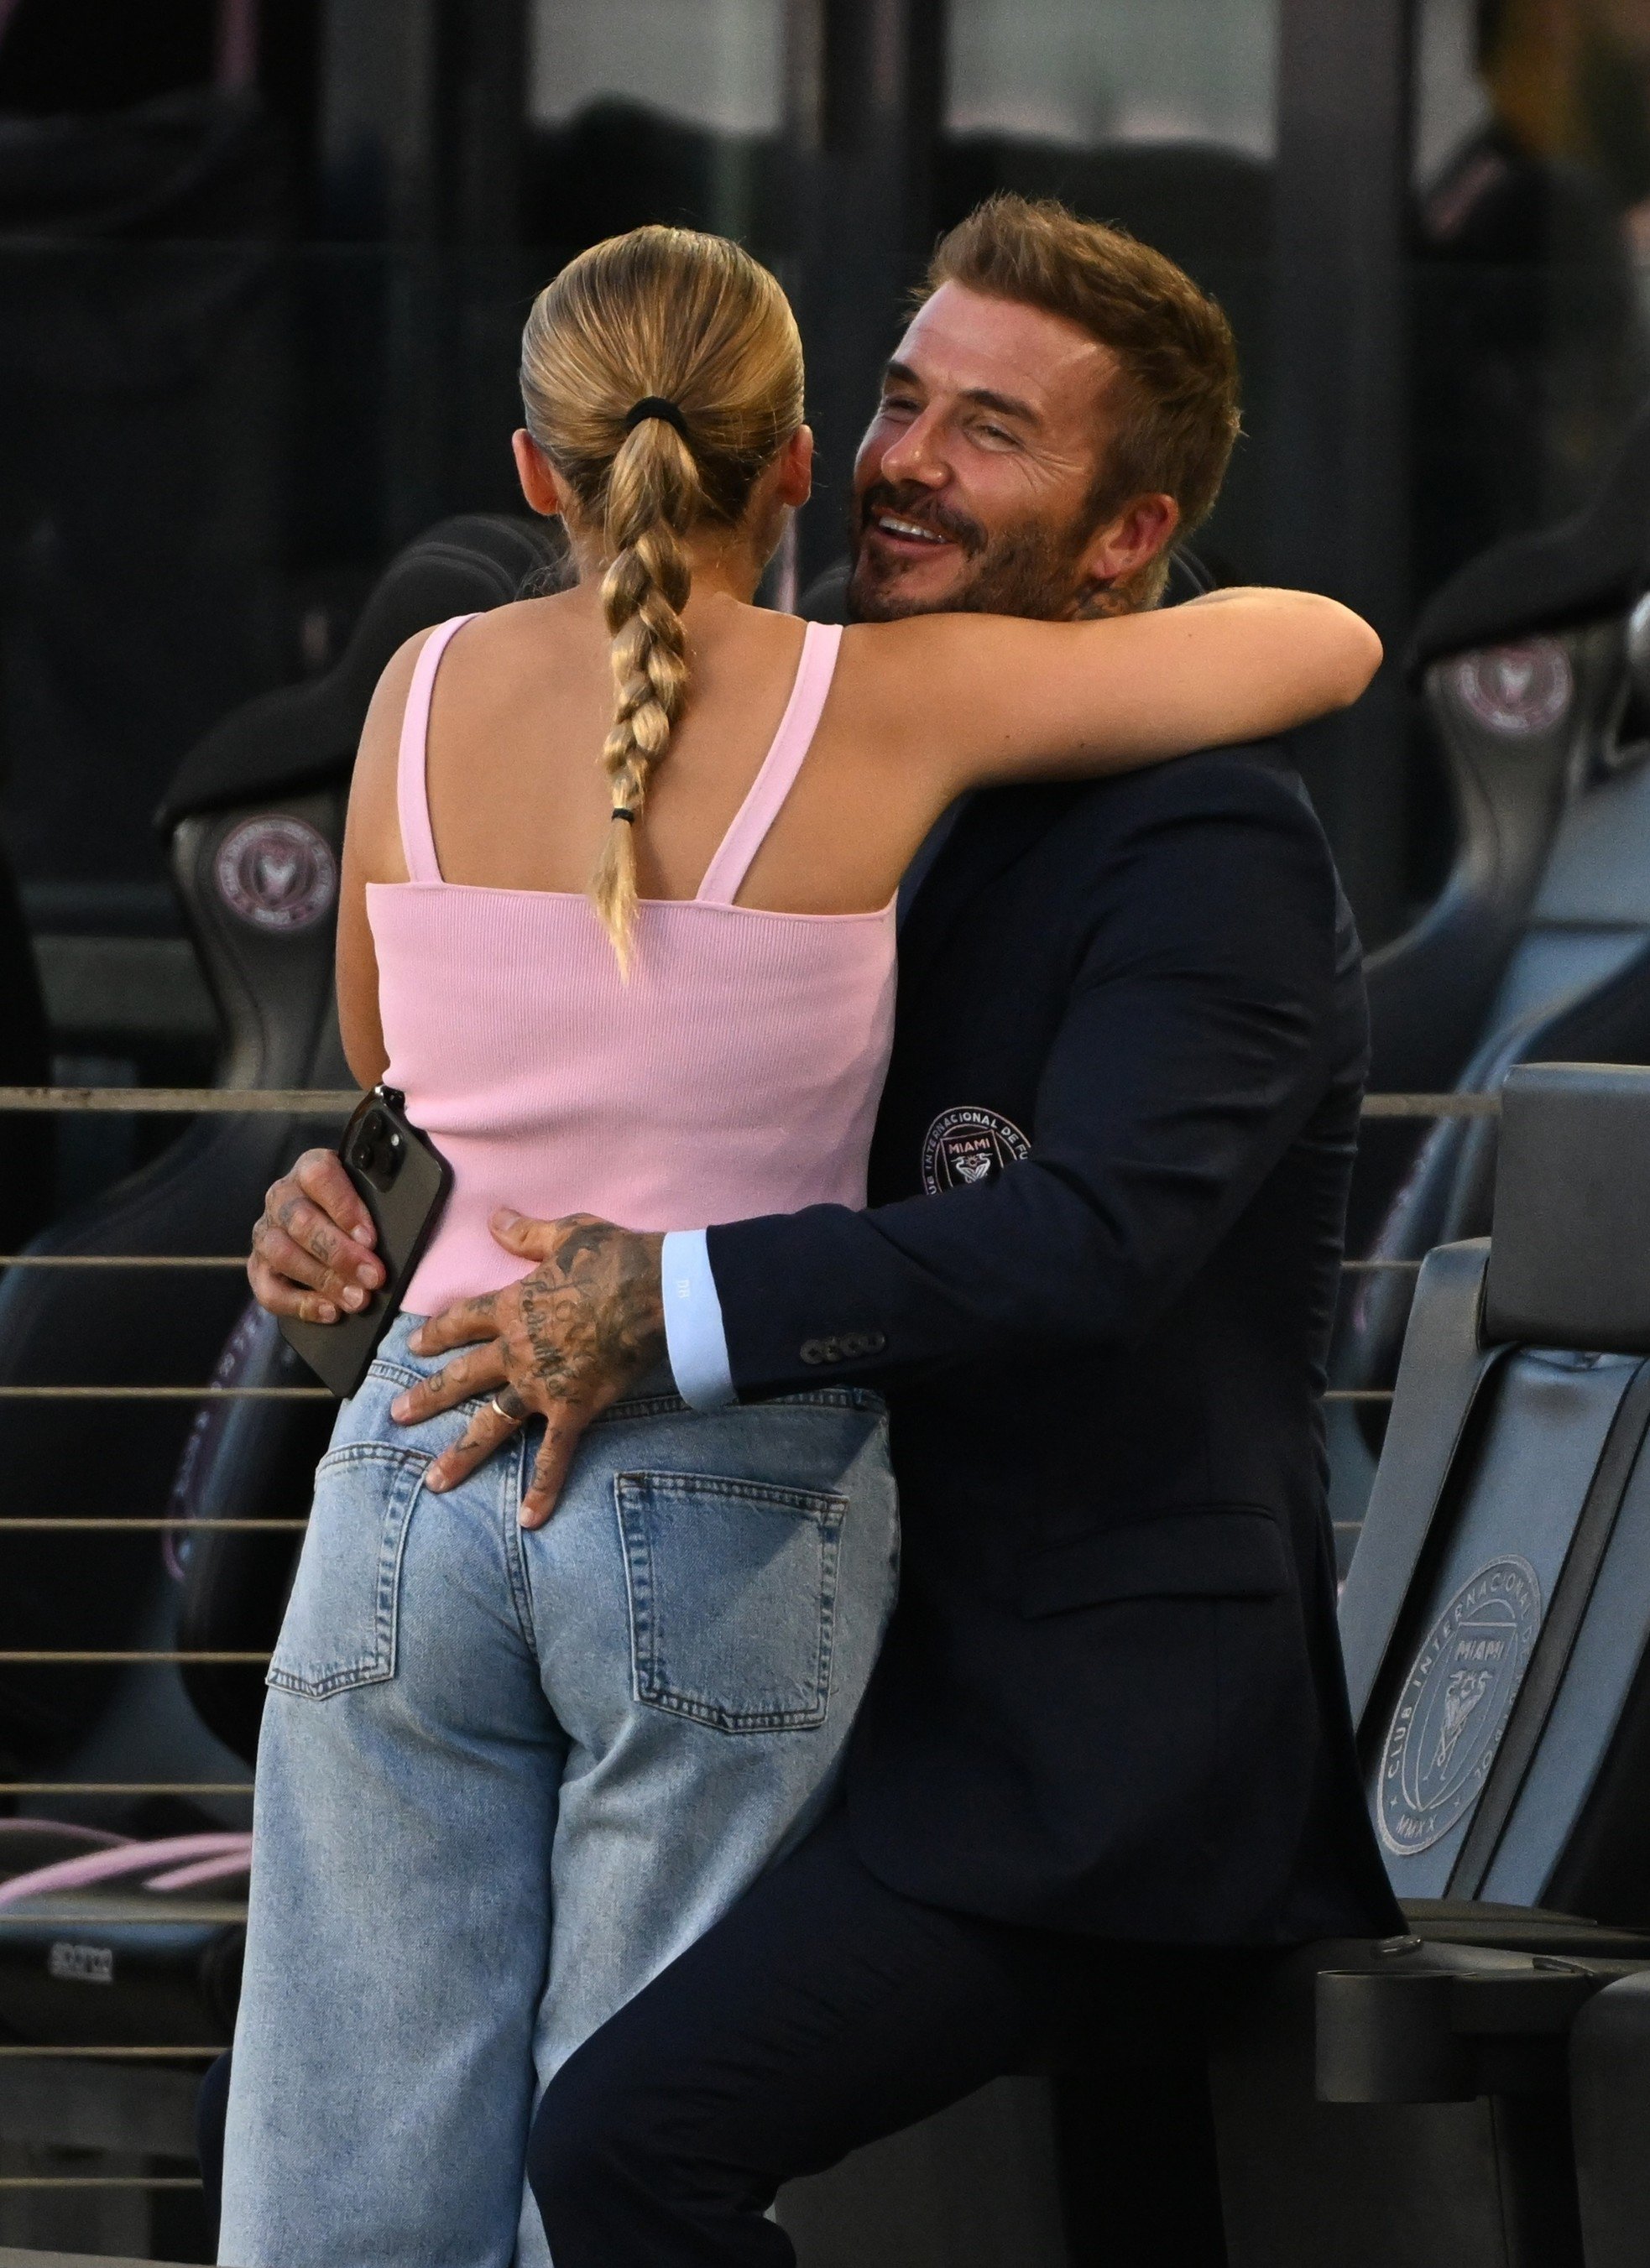 Trước đó, truyền thông nhiều lần phản ánh việc Beckham hôn con gái, thân thiết quá mức. Gần đây, cựu danh thủ người Anh tiết chế hơn trong việc thể hiện tình cảm với Harper.